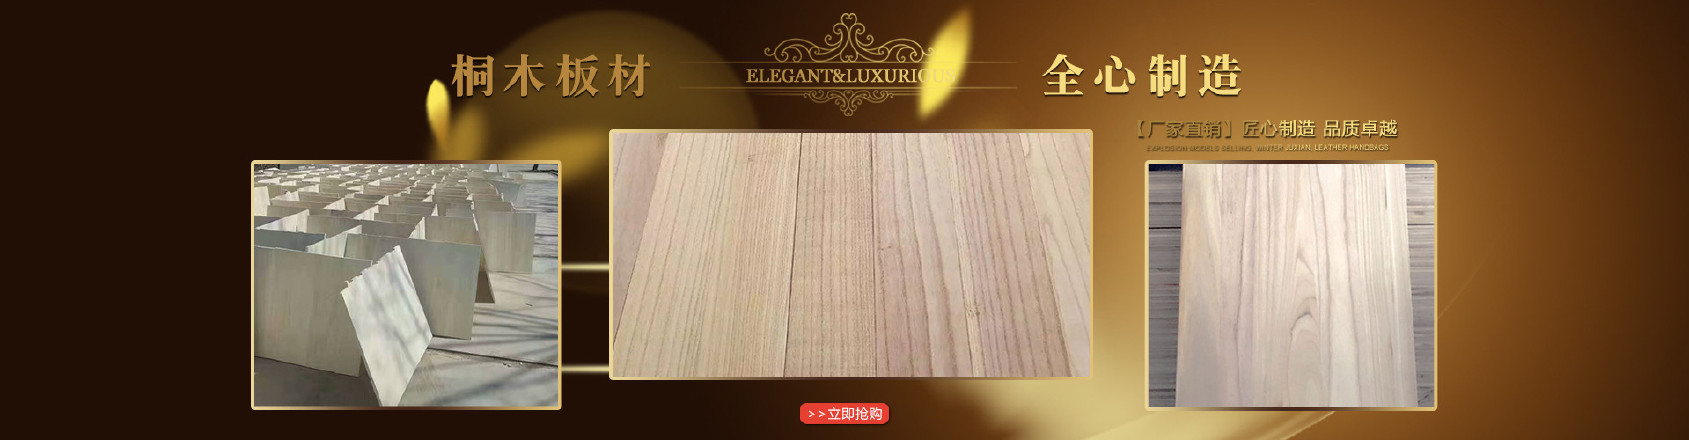 厂家直销家具用桐木拼板 定制各种规格桐木板材 桐木直拼板示例图1